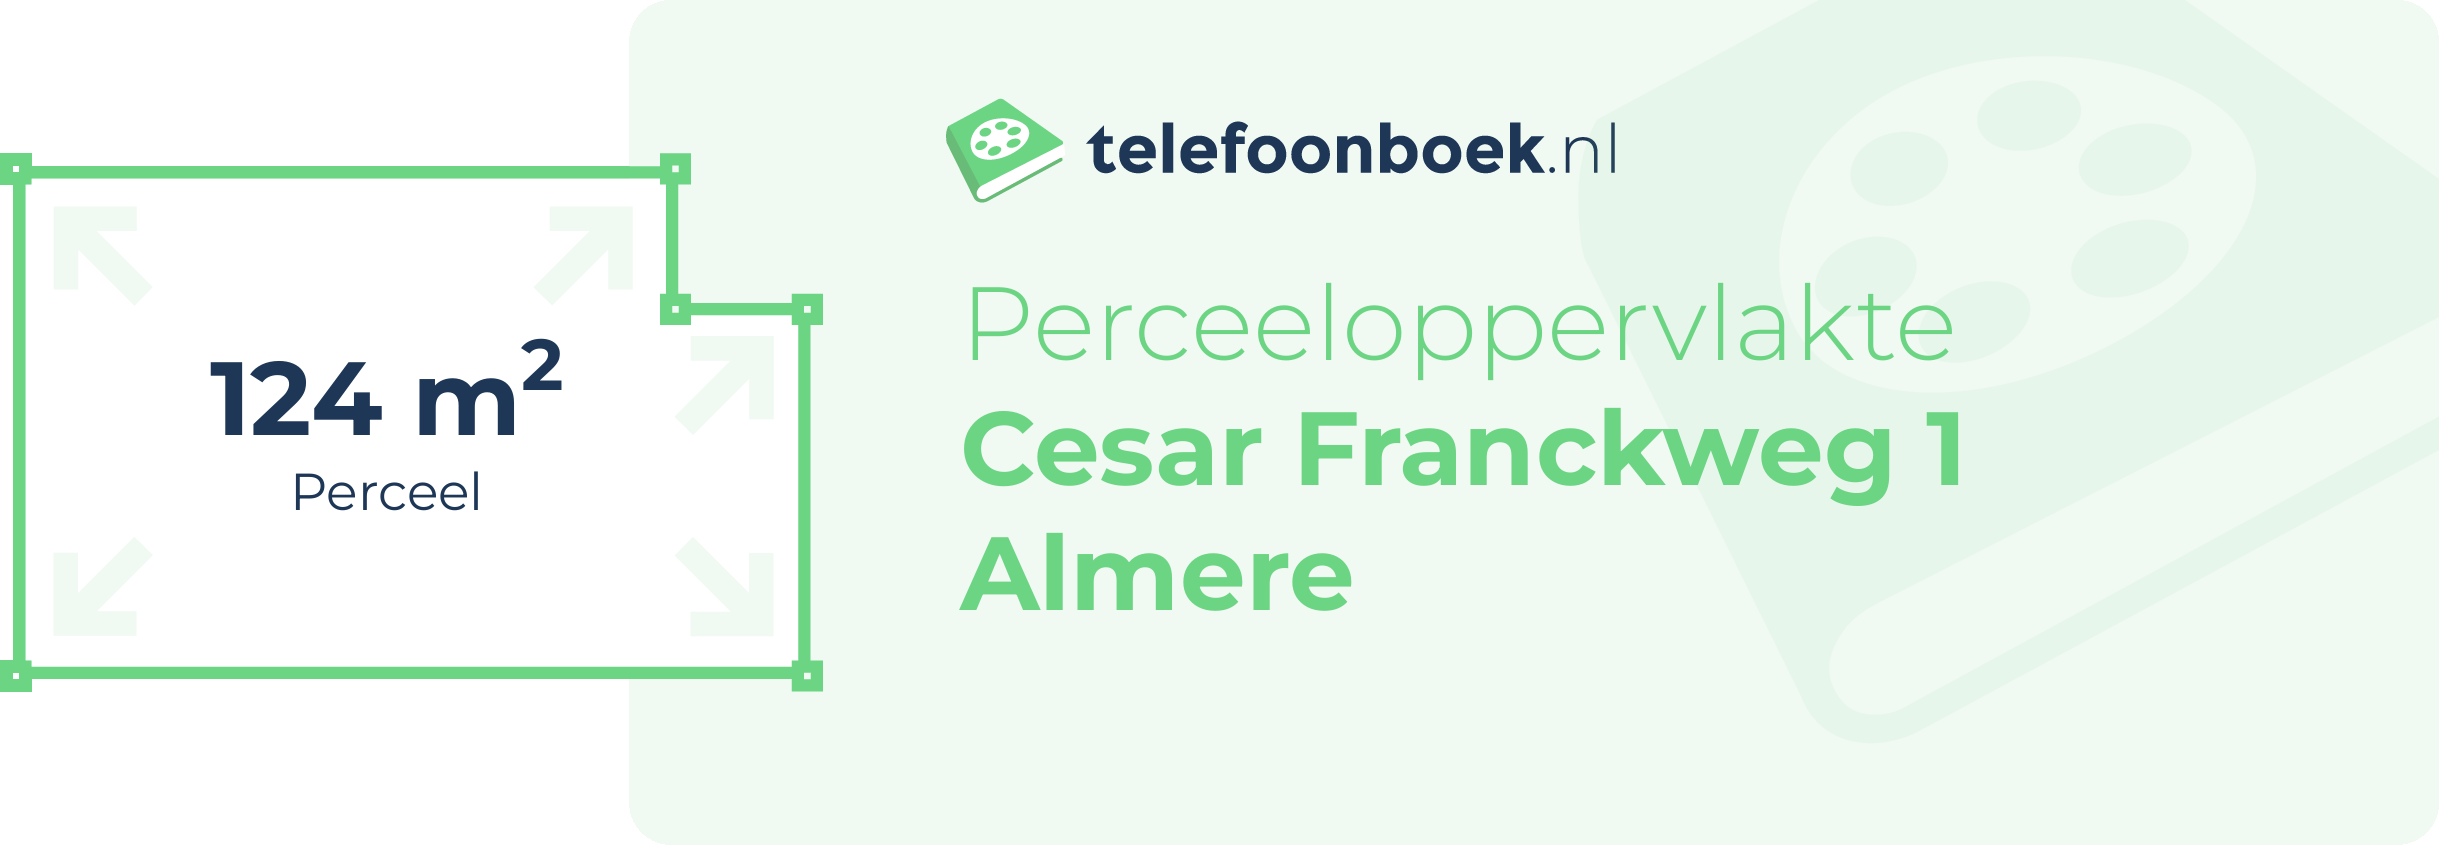 Perceeloppervlakte Cesar Franckweg 1 Almere